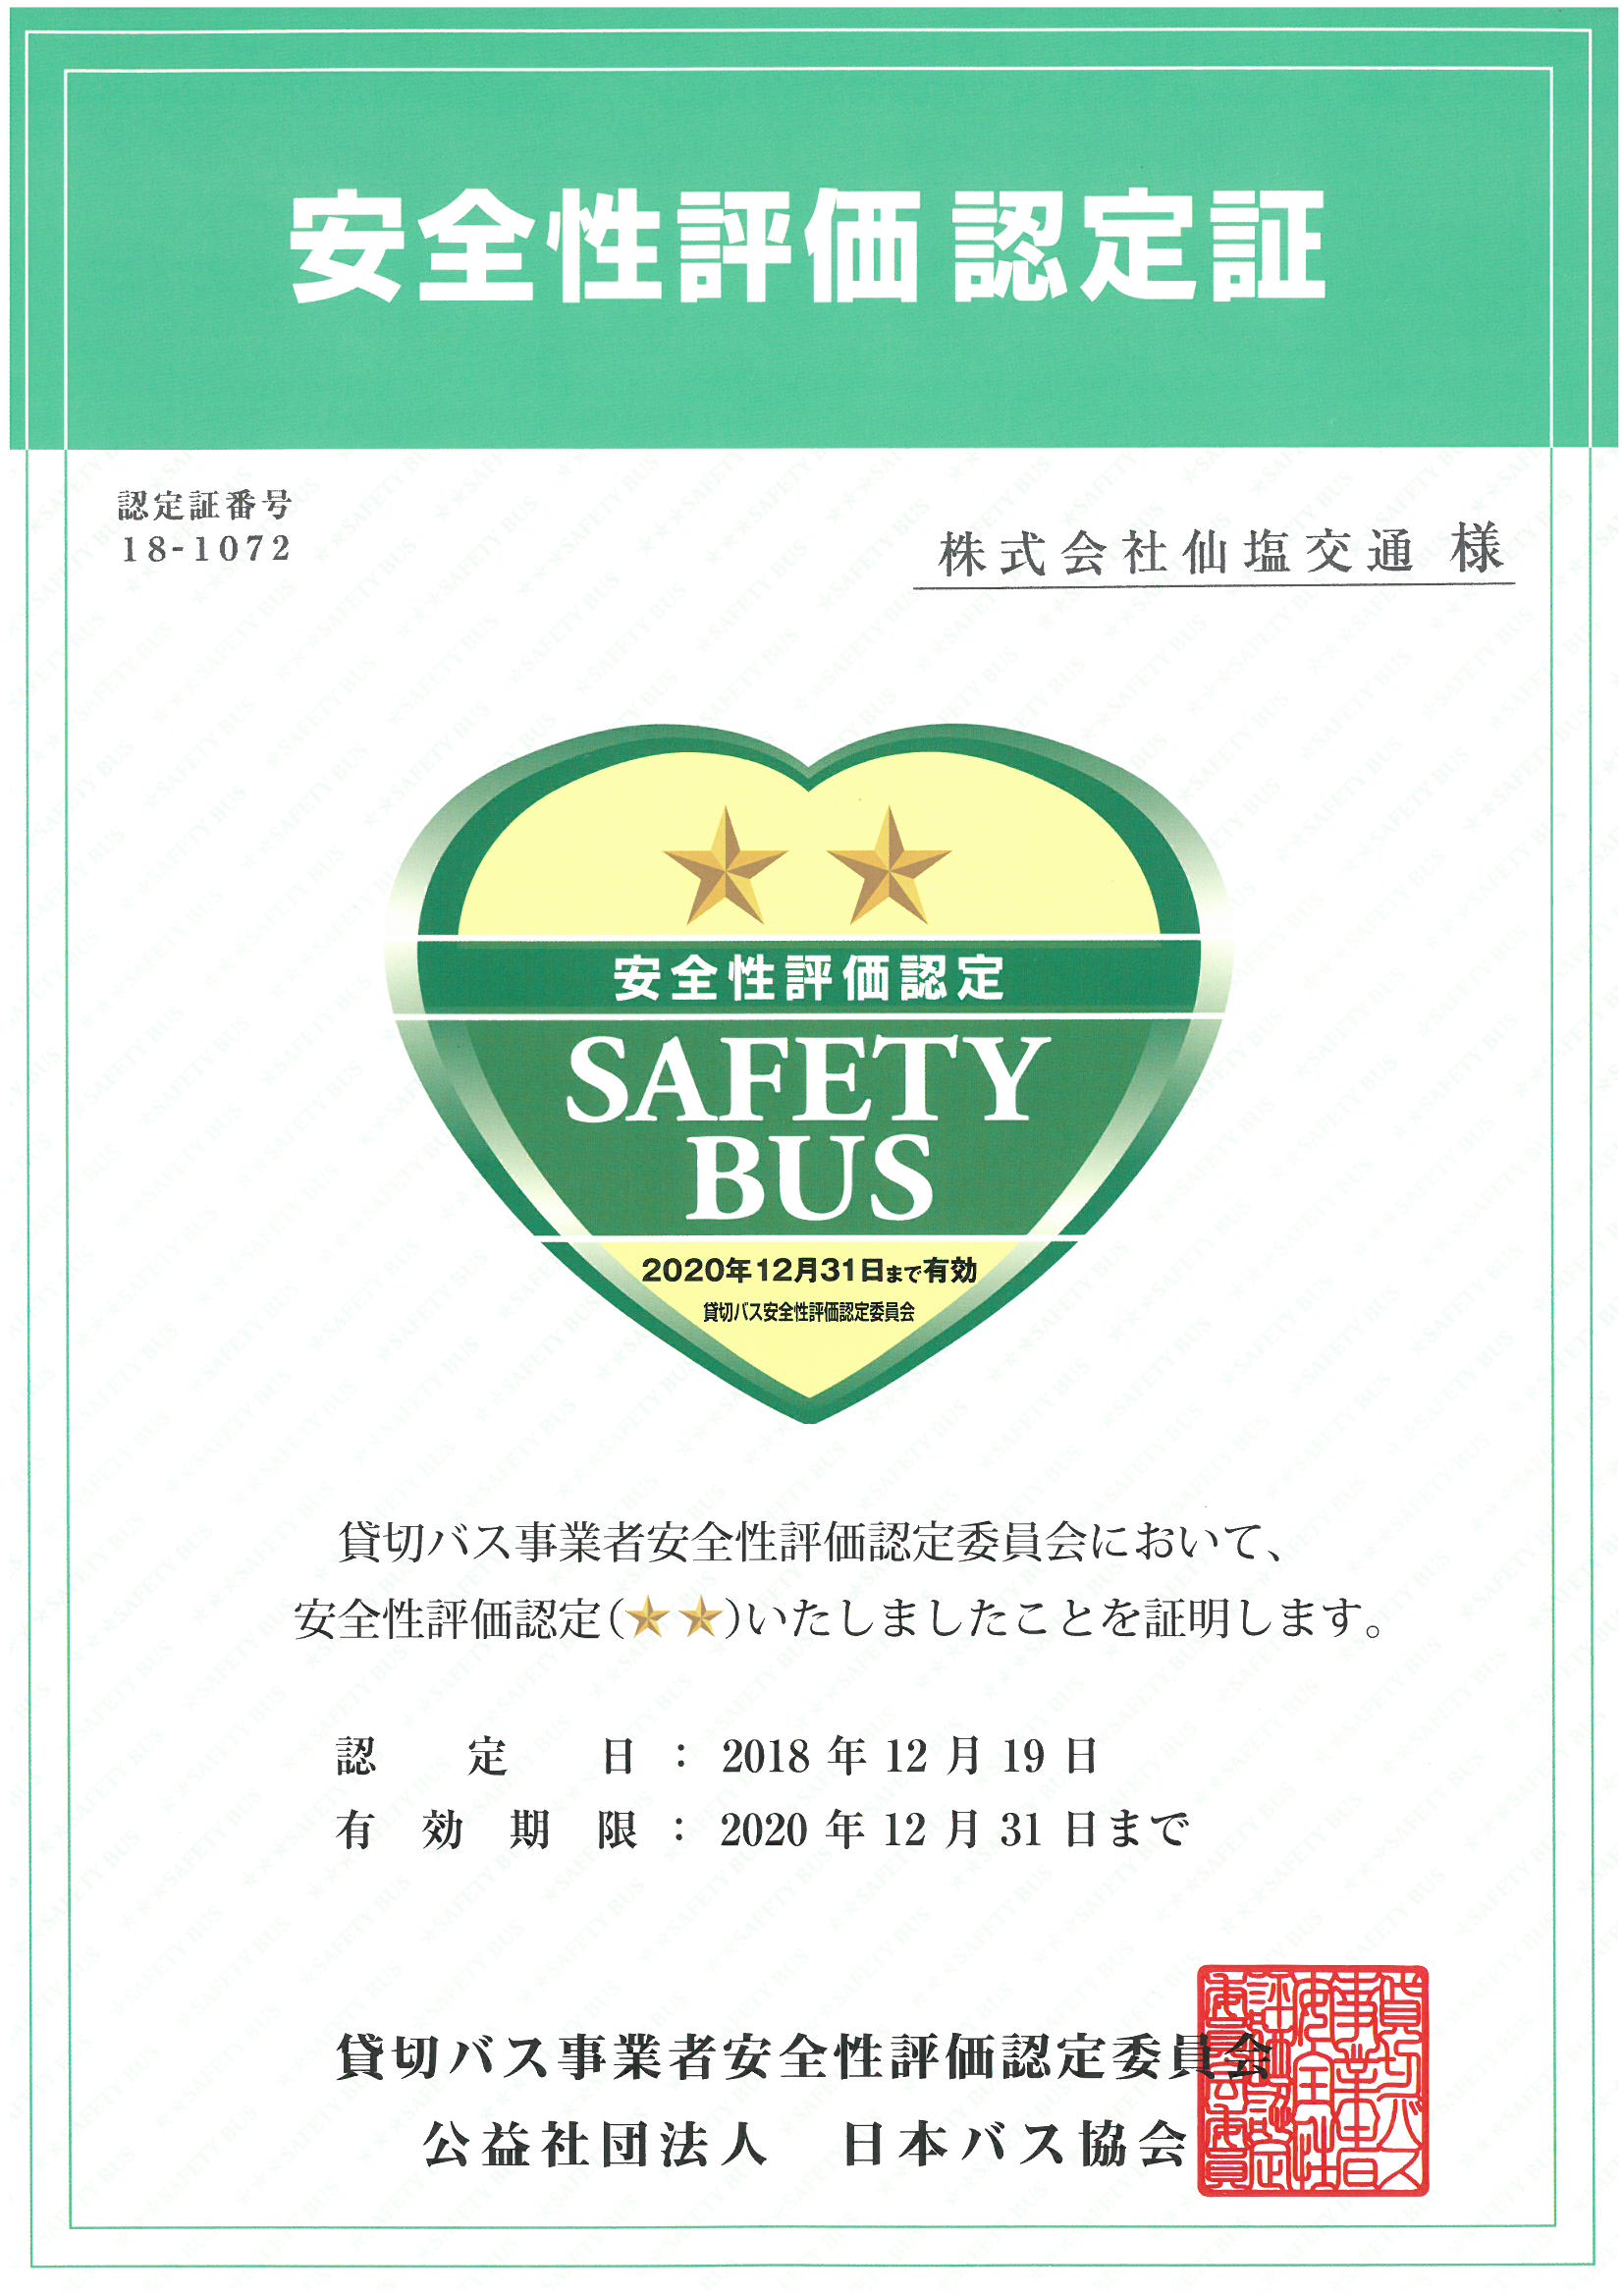 貸切バス事業者安全性評価認定委員会において、安全性評価認定(☆☆)の評価をいただきました。